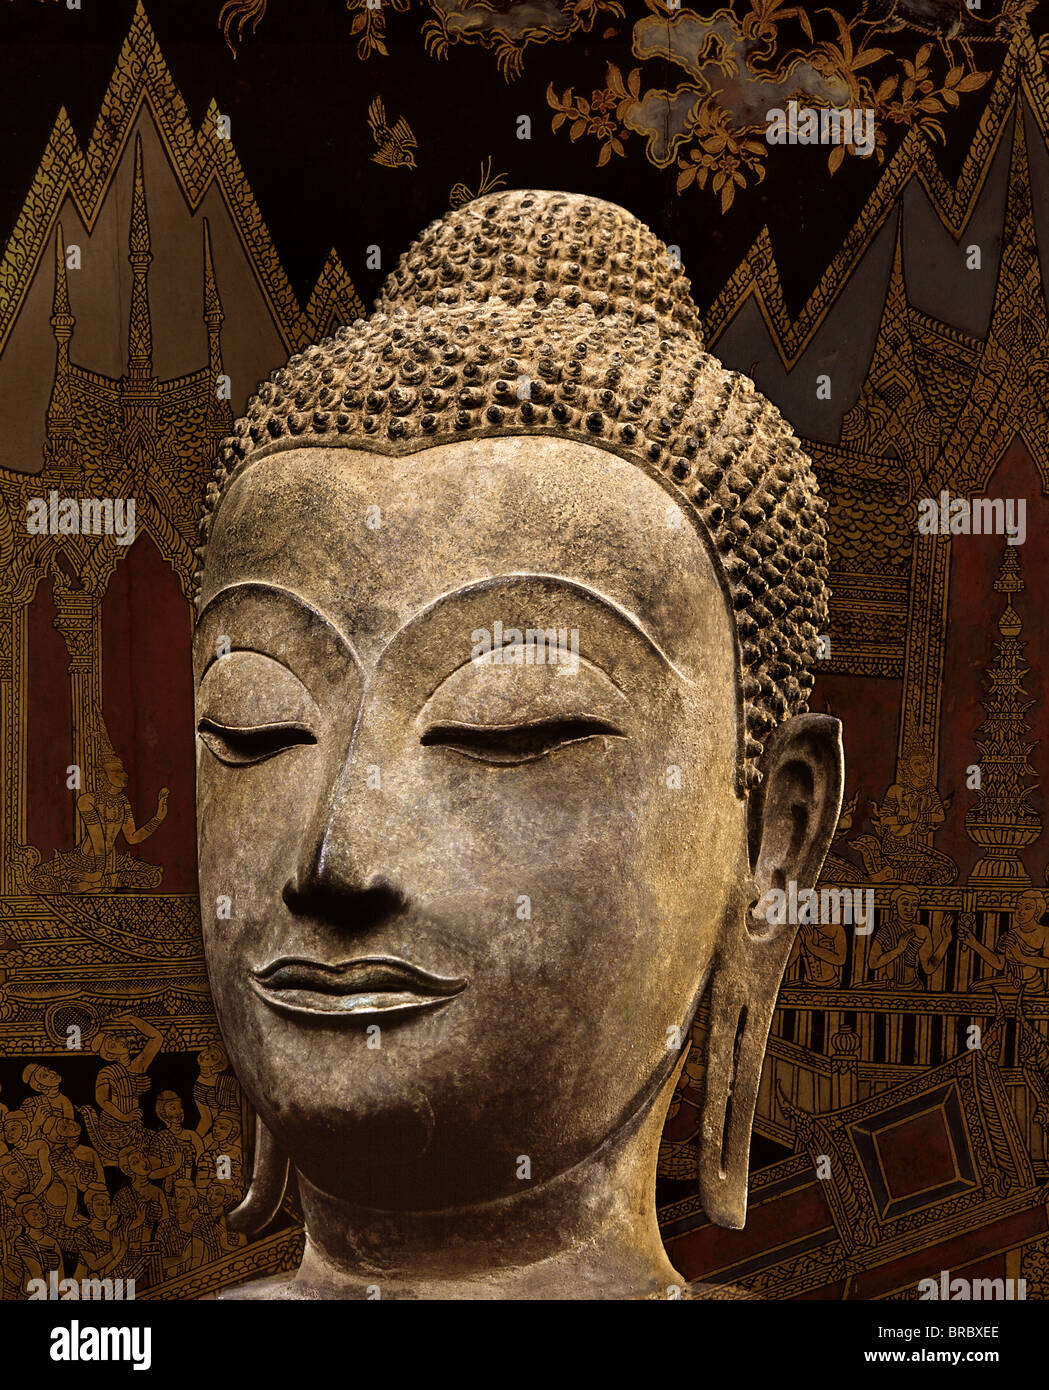 Cabeza de una imagen de Buda de bronce estilo de Ayutthaya, desde el siglo XV, Tailandia Foto de stock